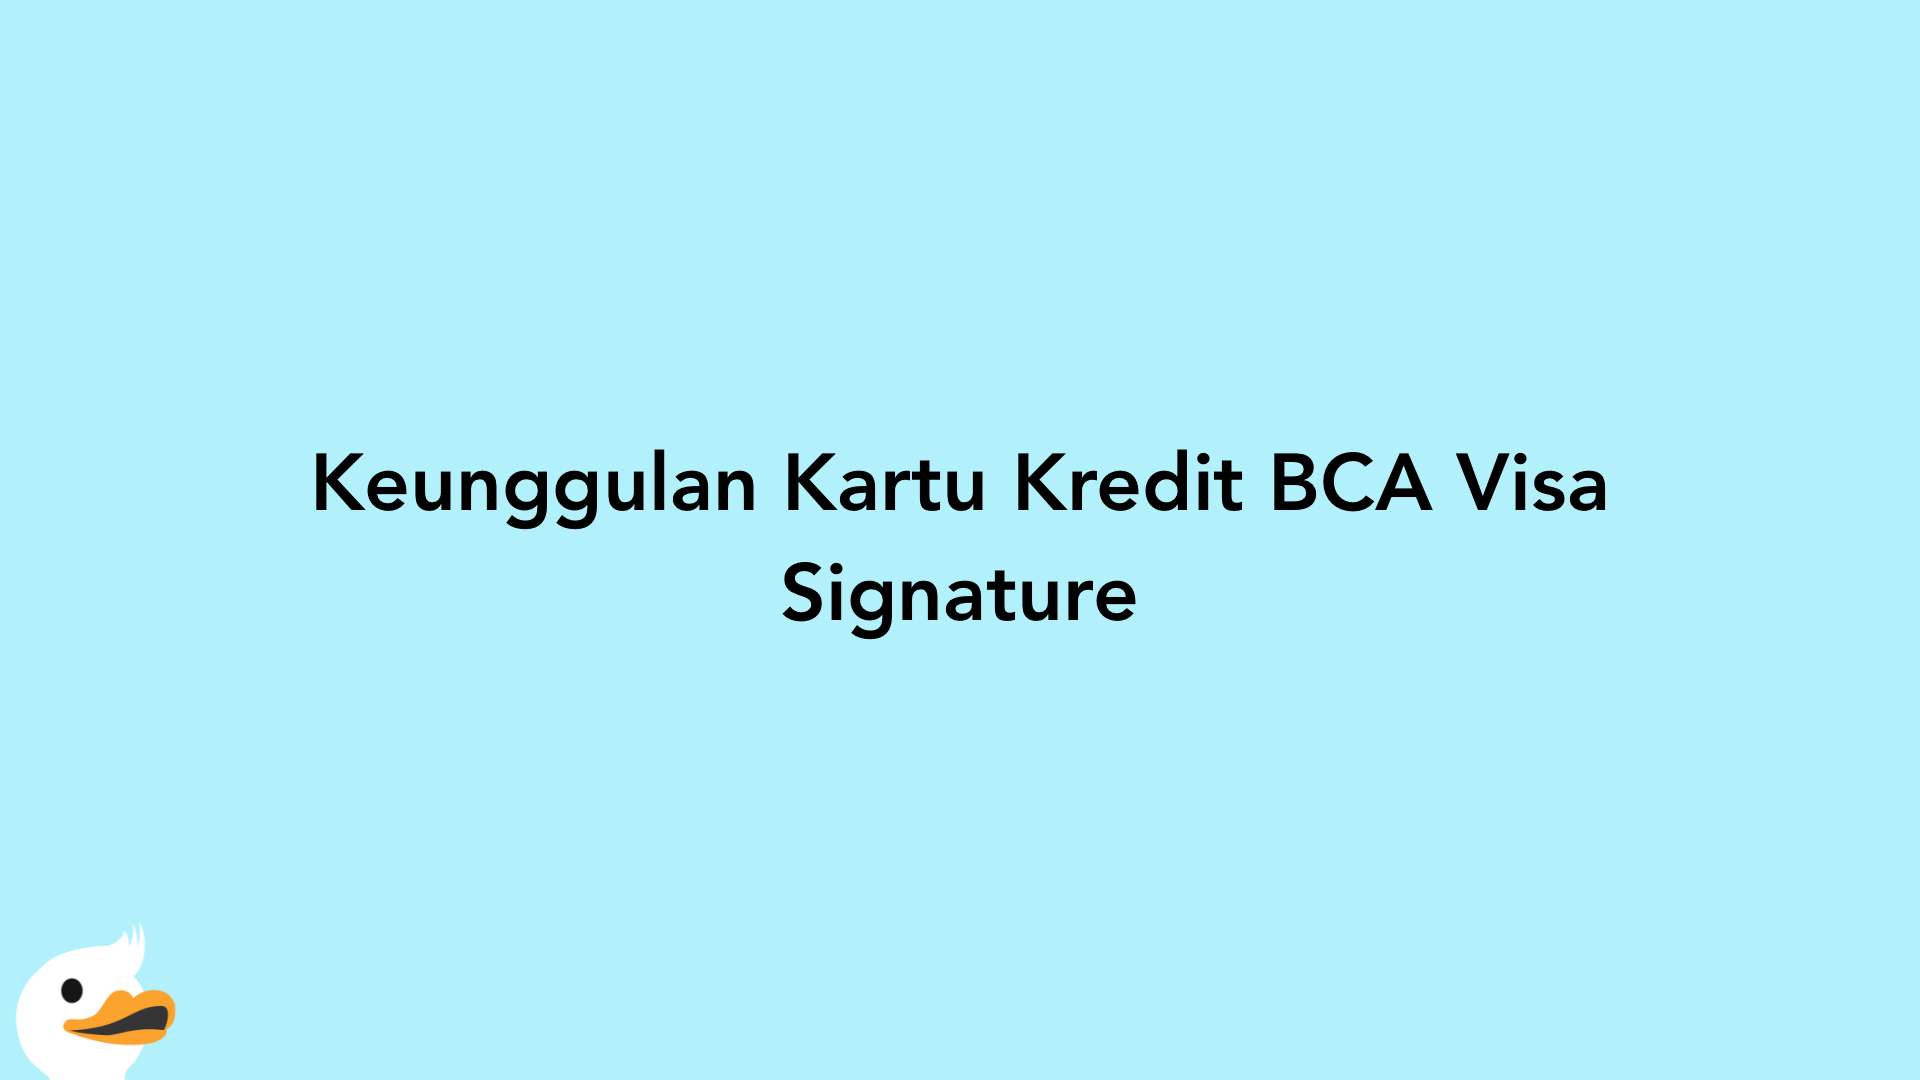 Keunggulan Kartu Kredit BCA Visa Signature